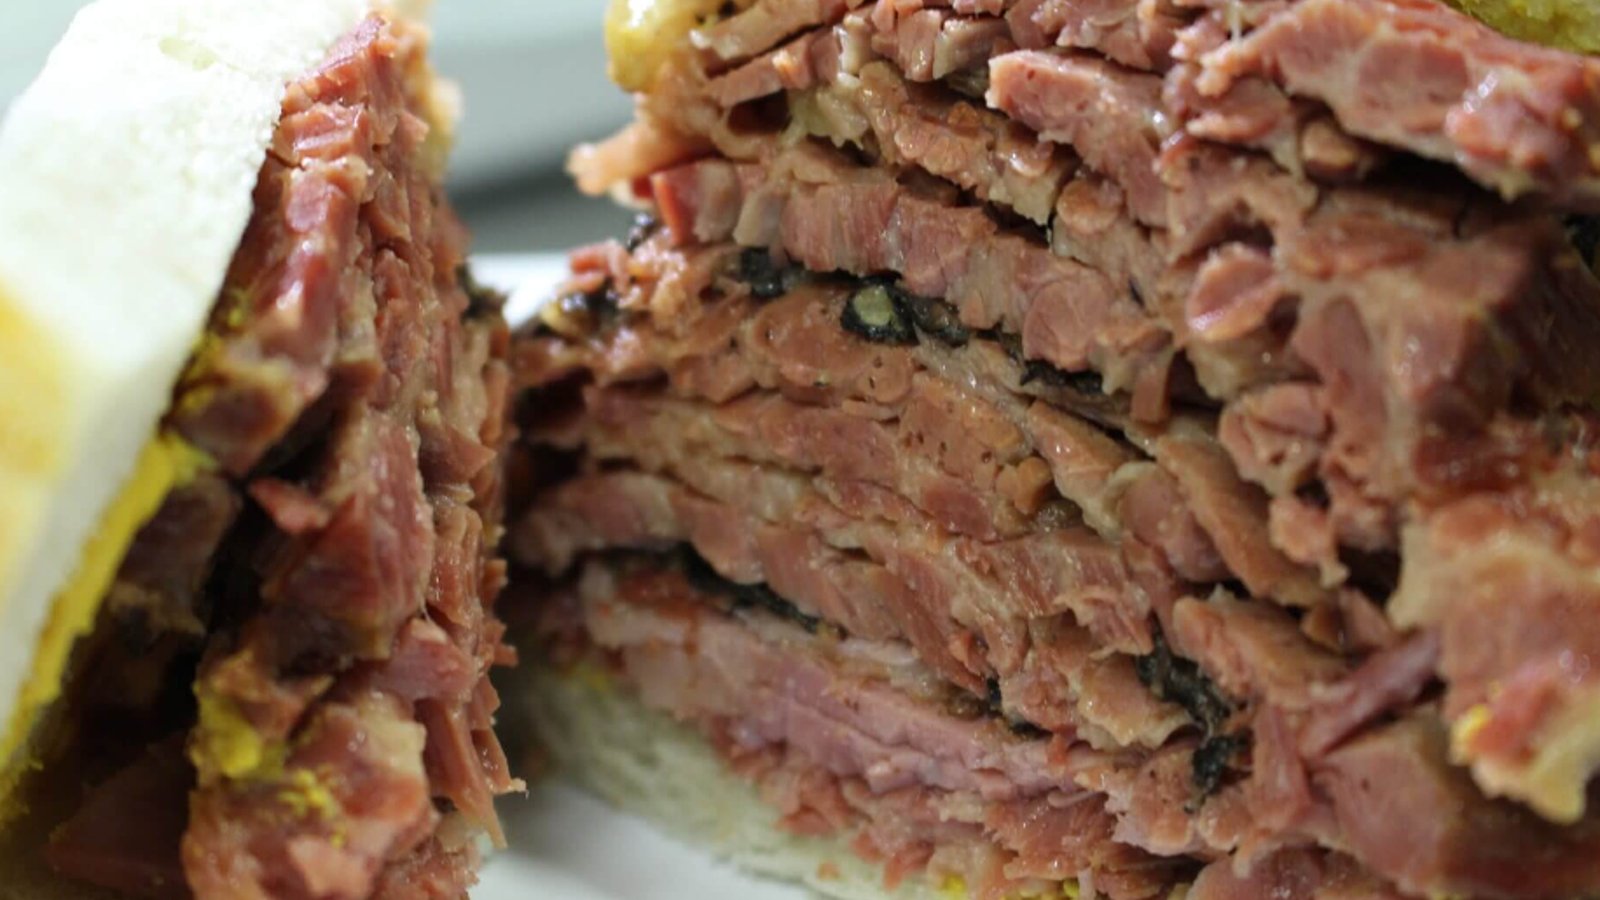 Ce populaire restaurant de smoked meat de Montréal écope d'une importante amende  